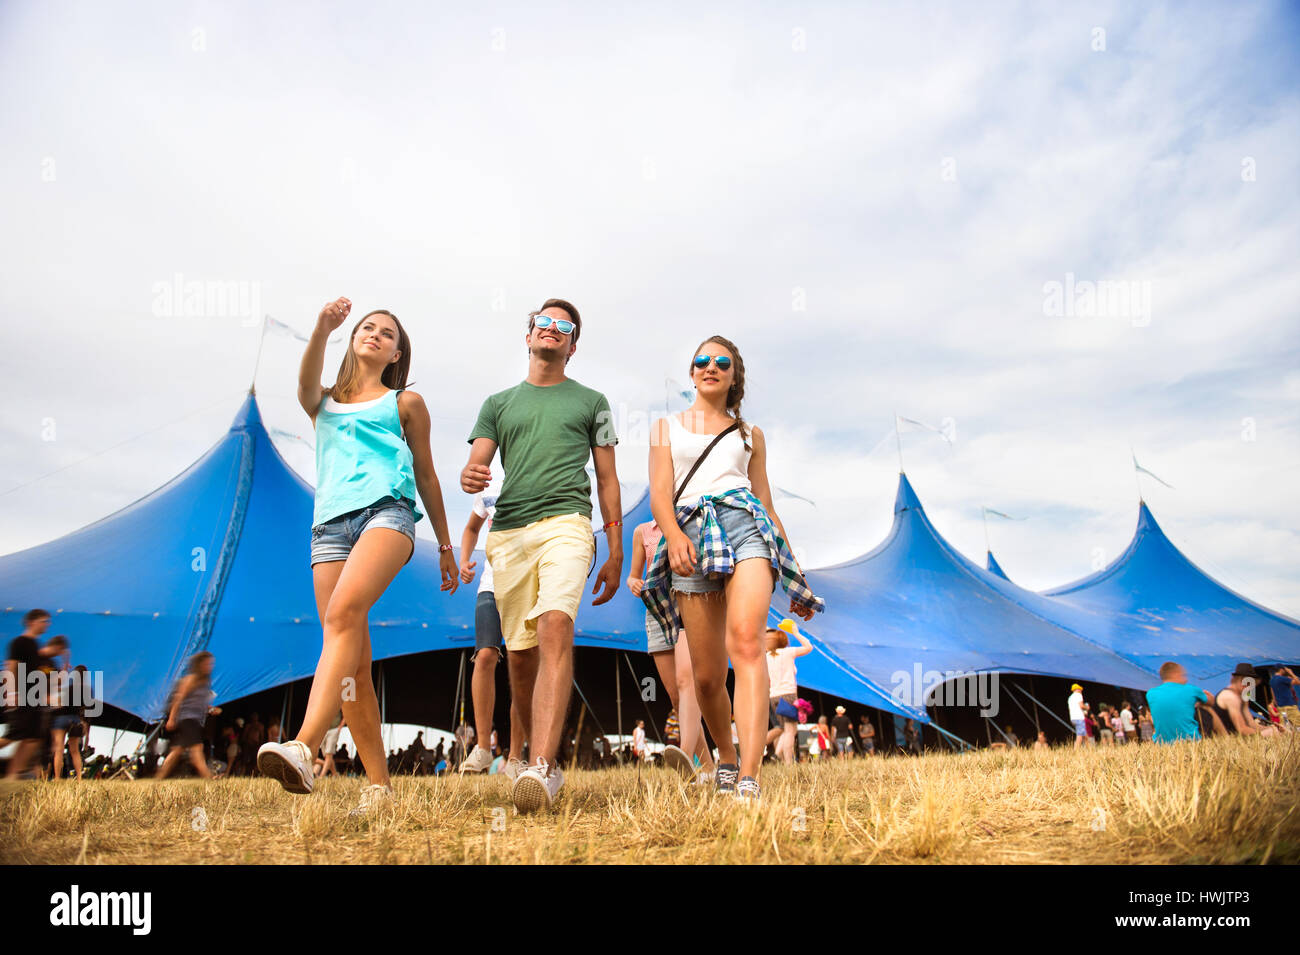 Groupe de jeunes garçons et filles à summer music festival balade en face de big blue tente, journée ensoleillée Banque D'Images